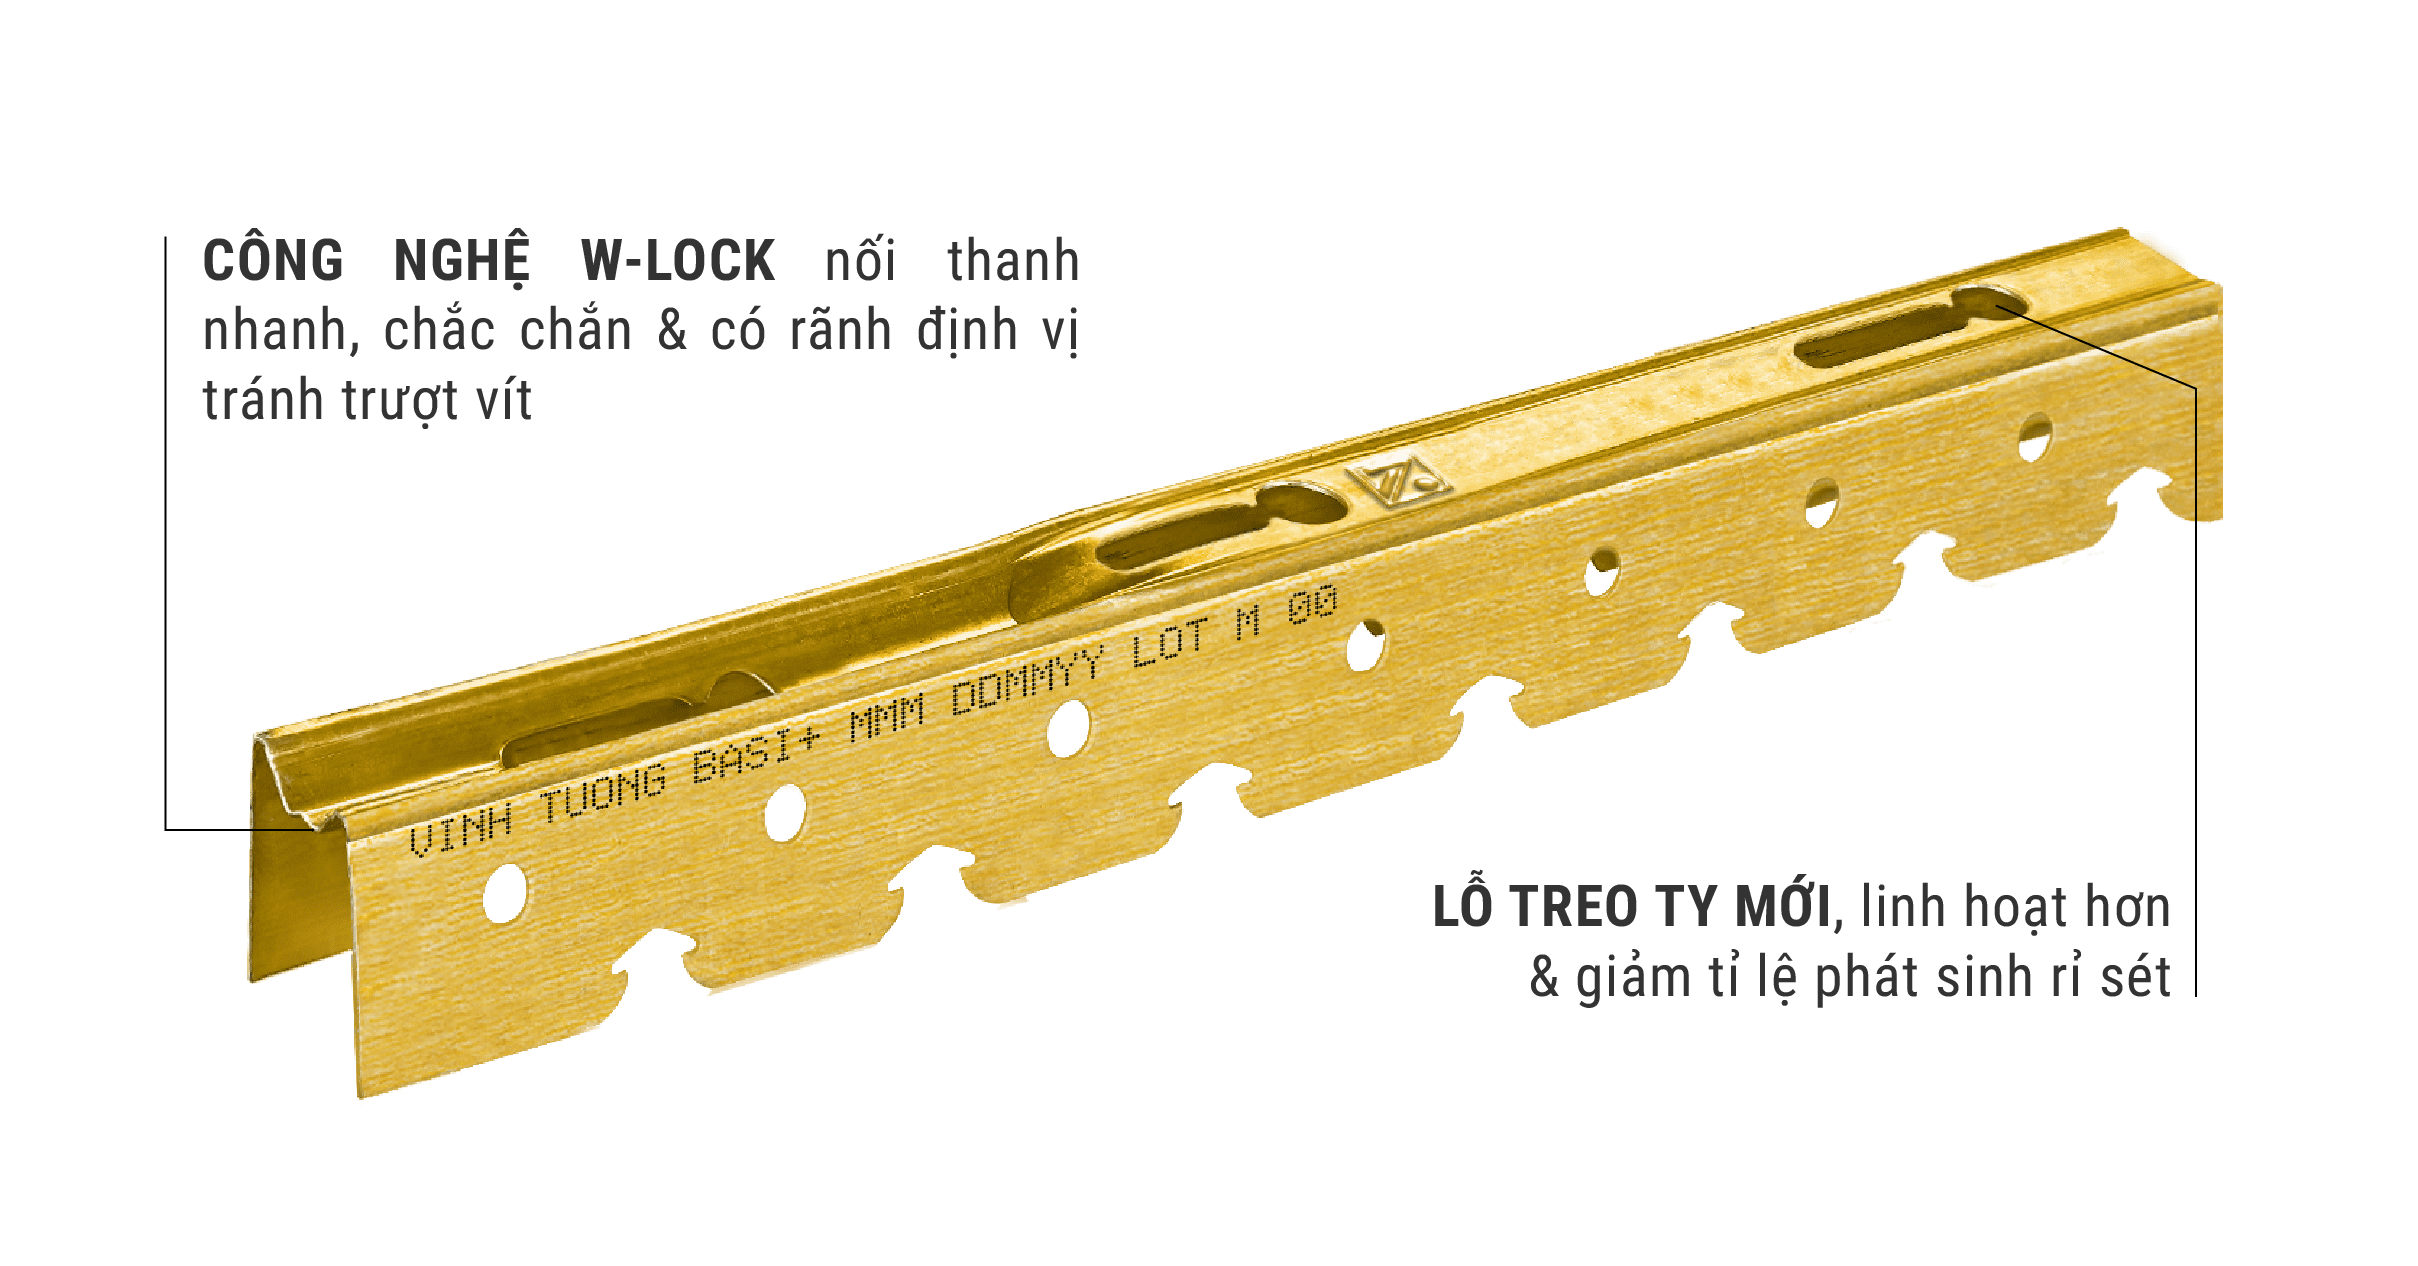 Công nghệ W-Lock của khung trần chìm Vĩnh Tường BASI® Plus